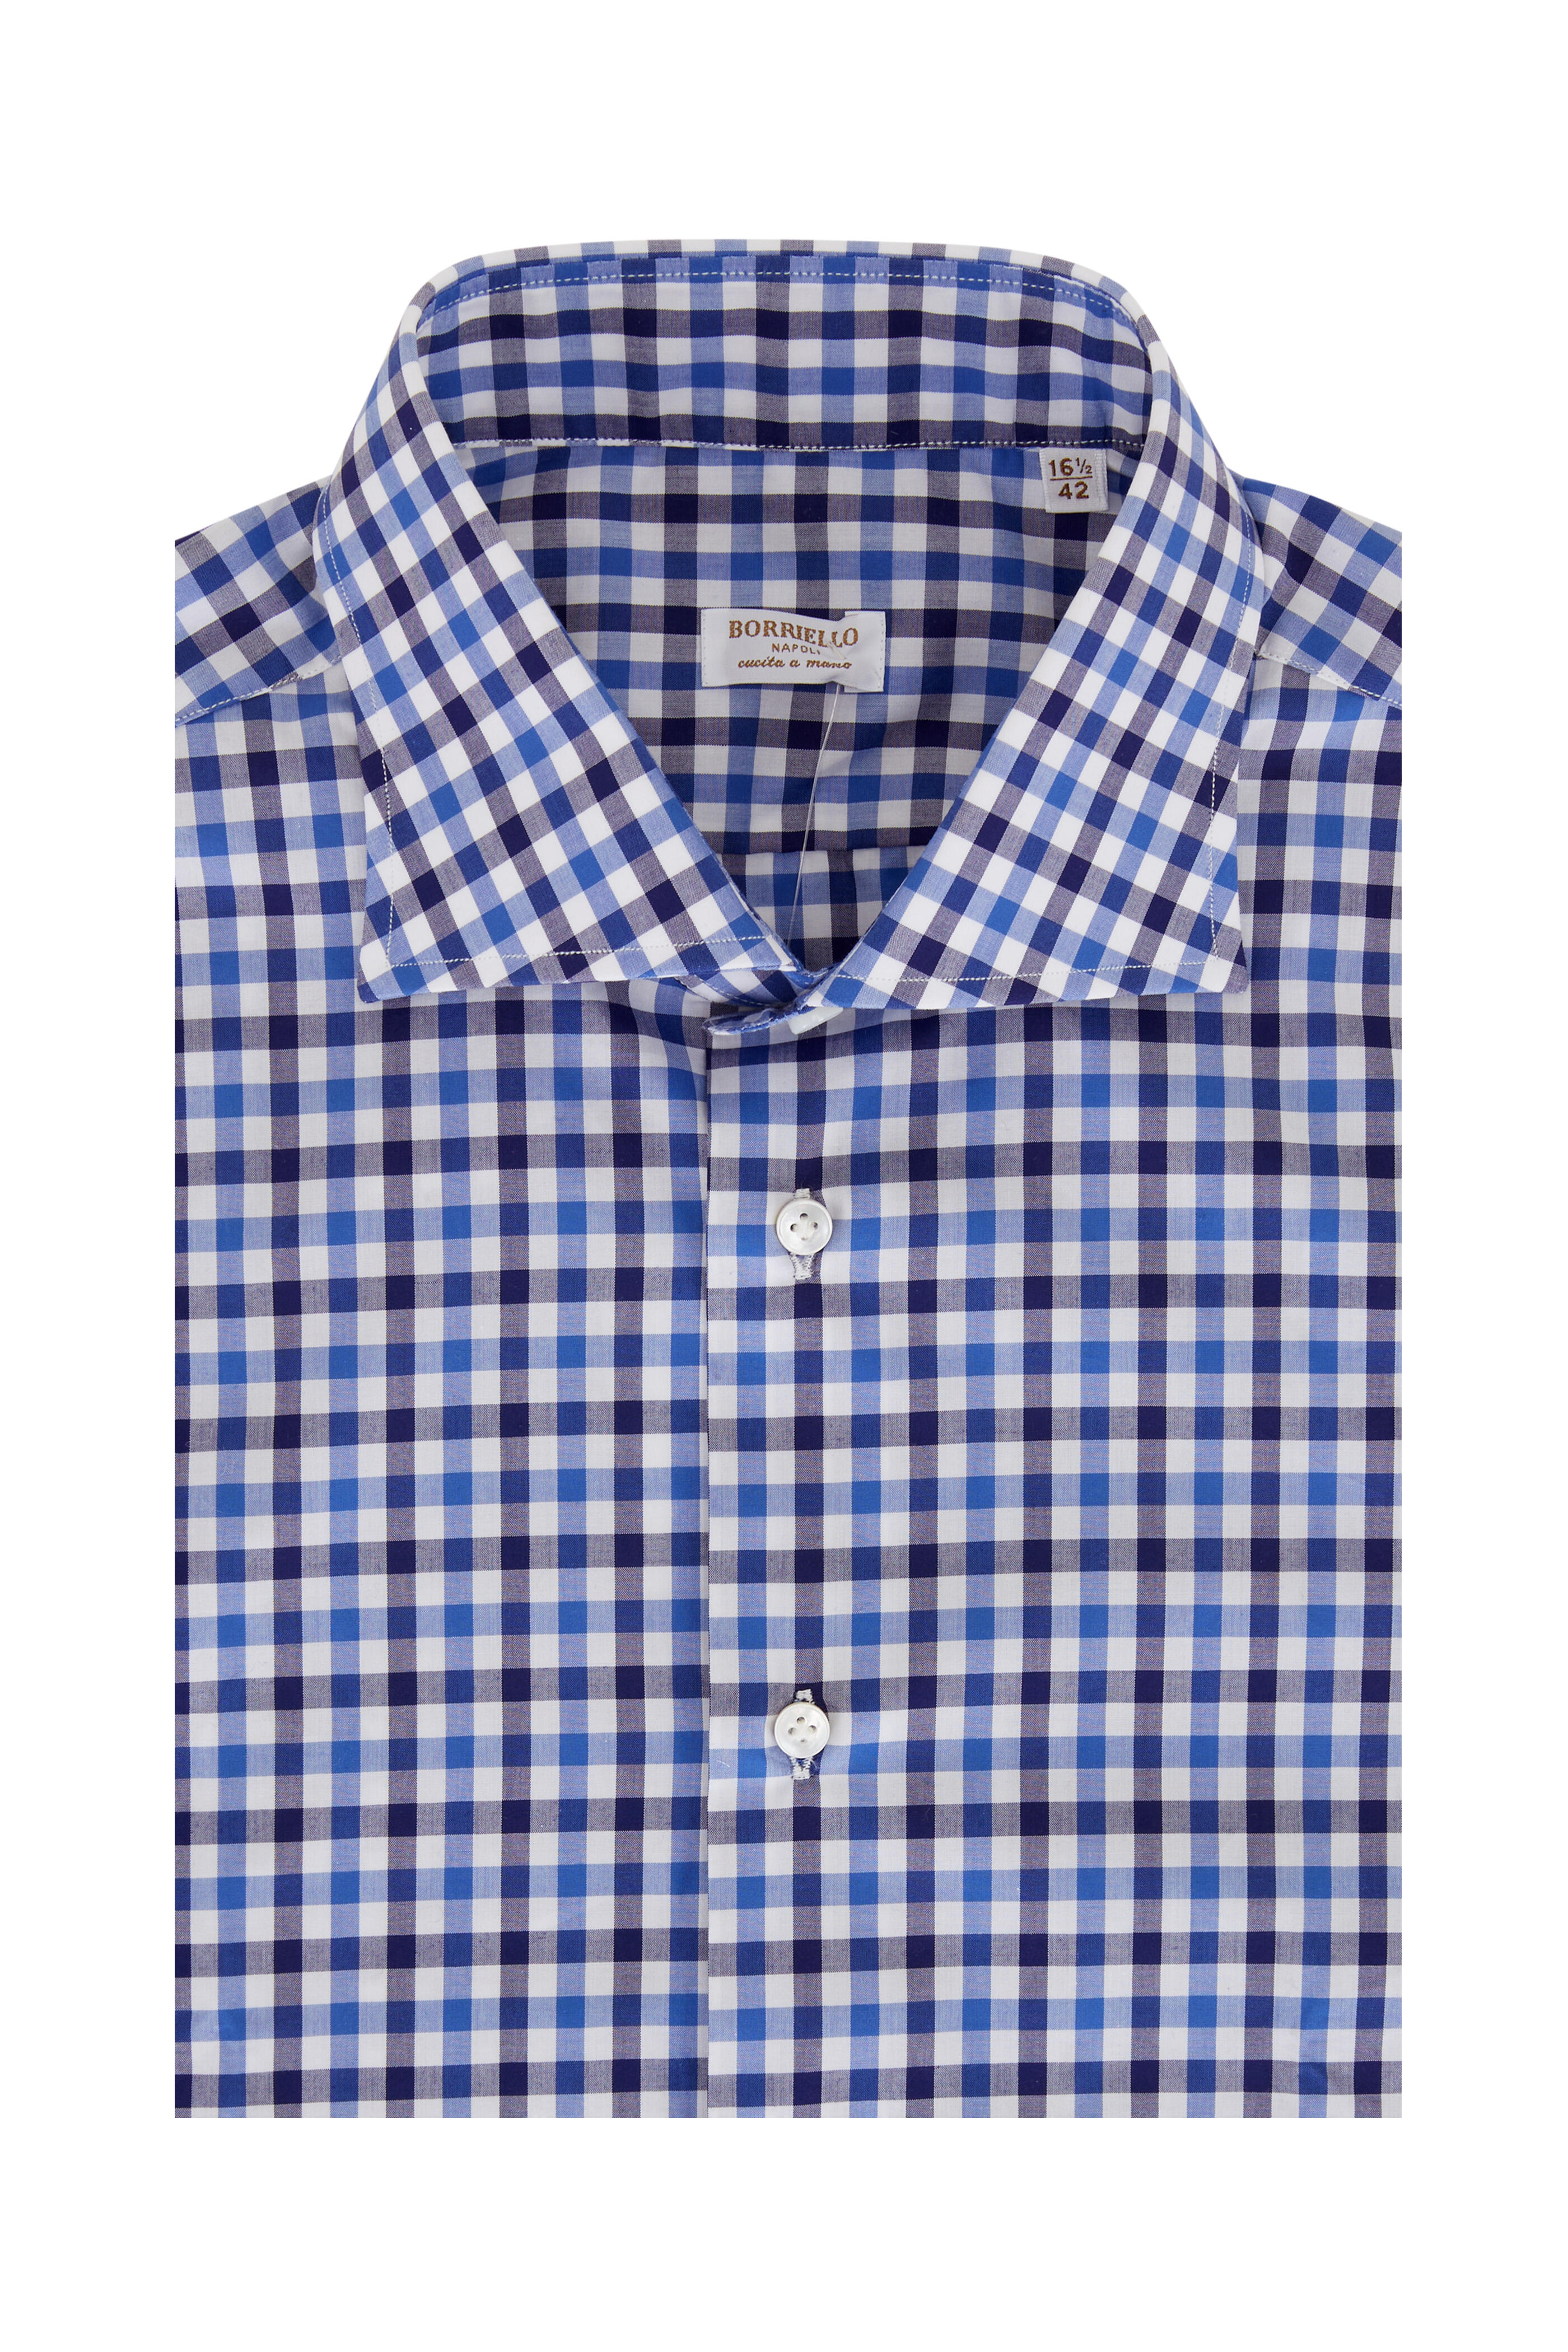 Borriello - Blue & Navy Check Cotton Dress Shirt